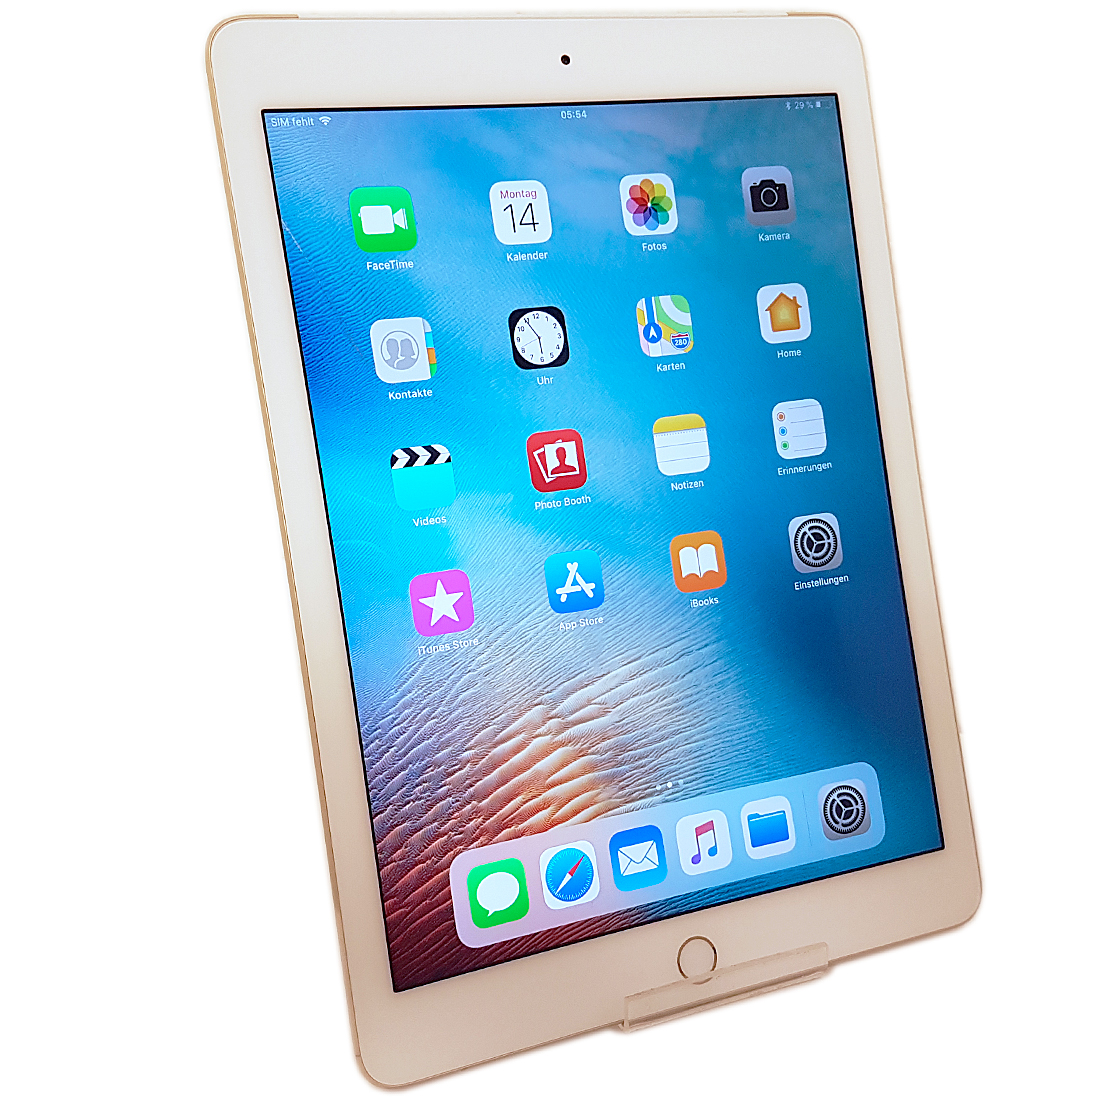 Apple iPad Air 2 Gold 128Gb Wi-Fi Cellular A1567 | eBay